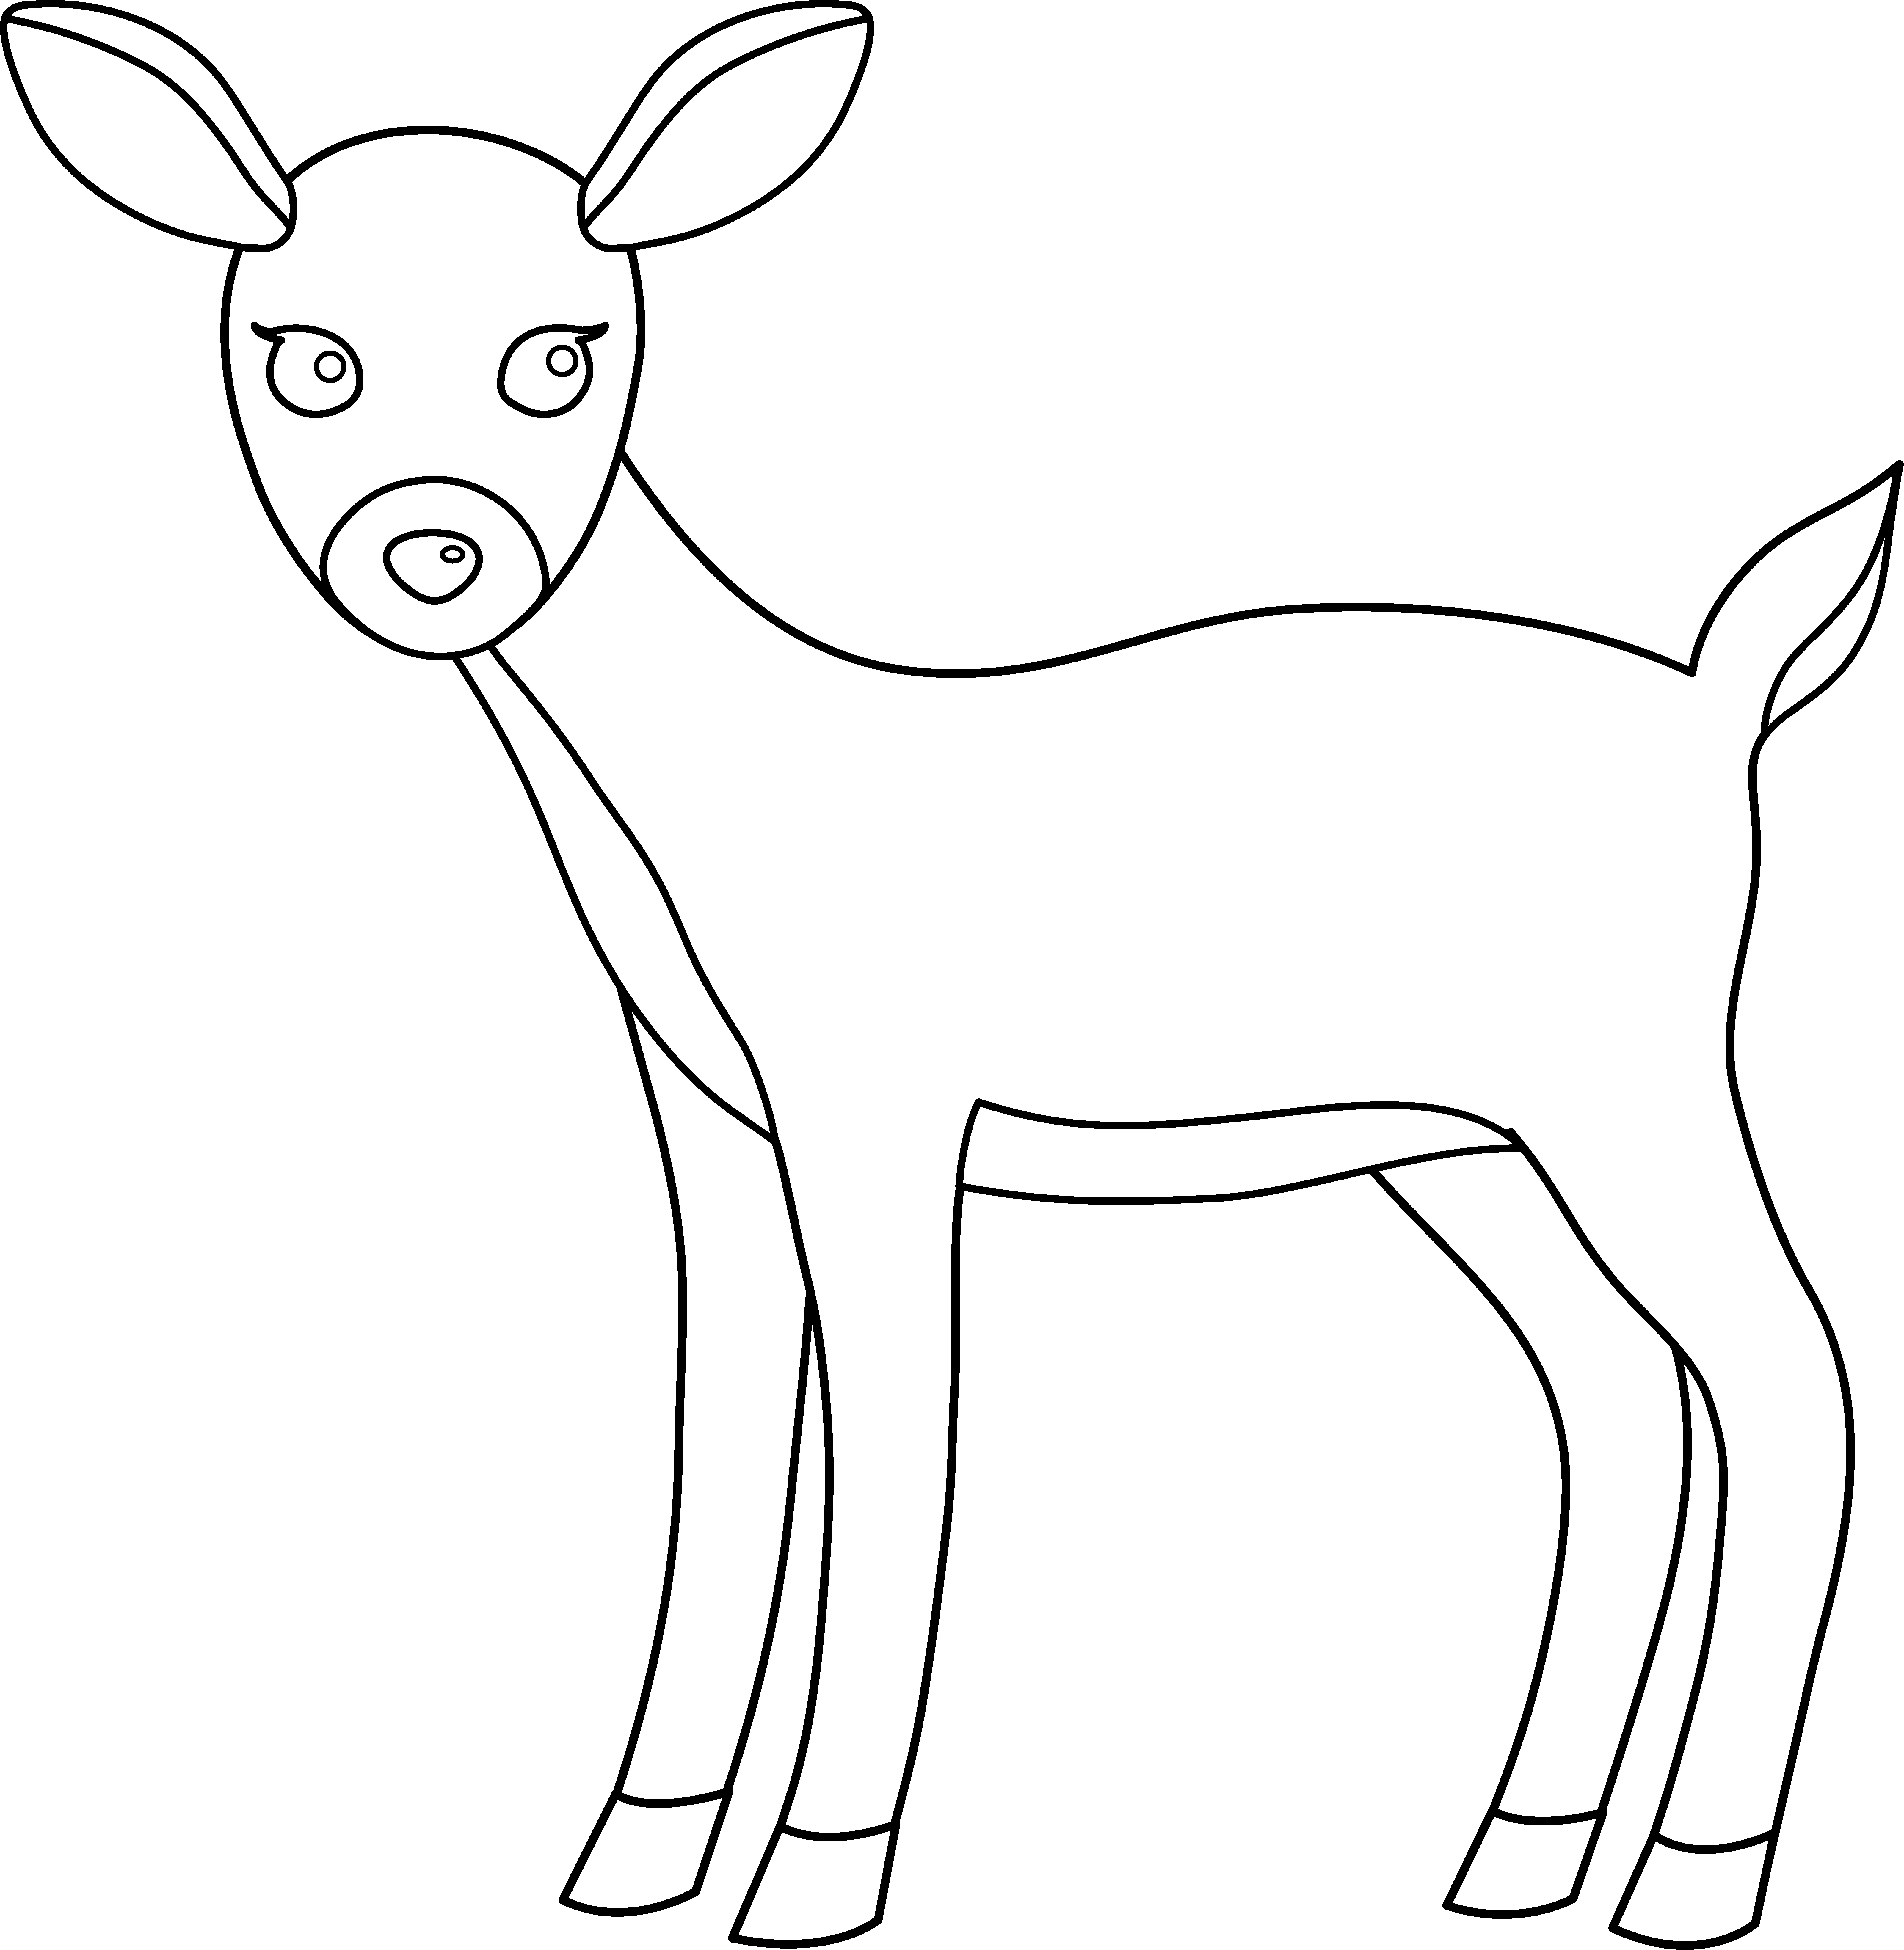 Cute line art free. Deer clipart female deer